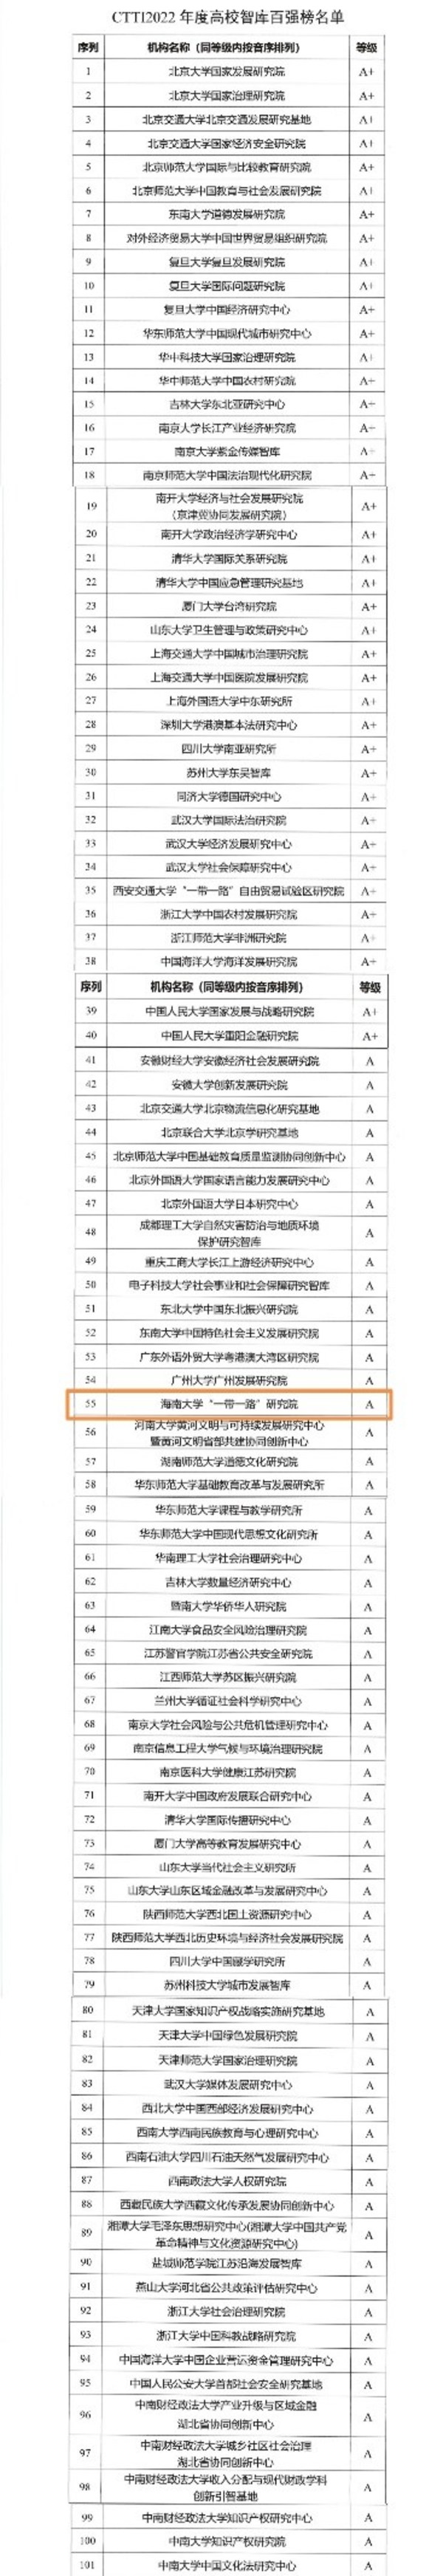 海南大学与北京大学、清华大学等共同入选2022年度CTTI高校智库百强榜0